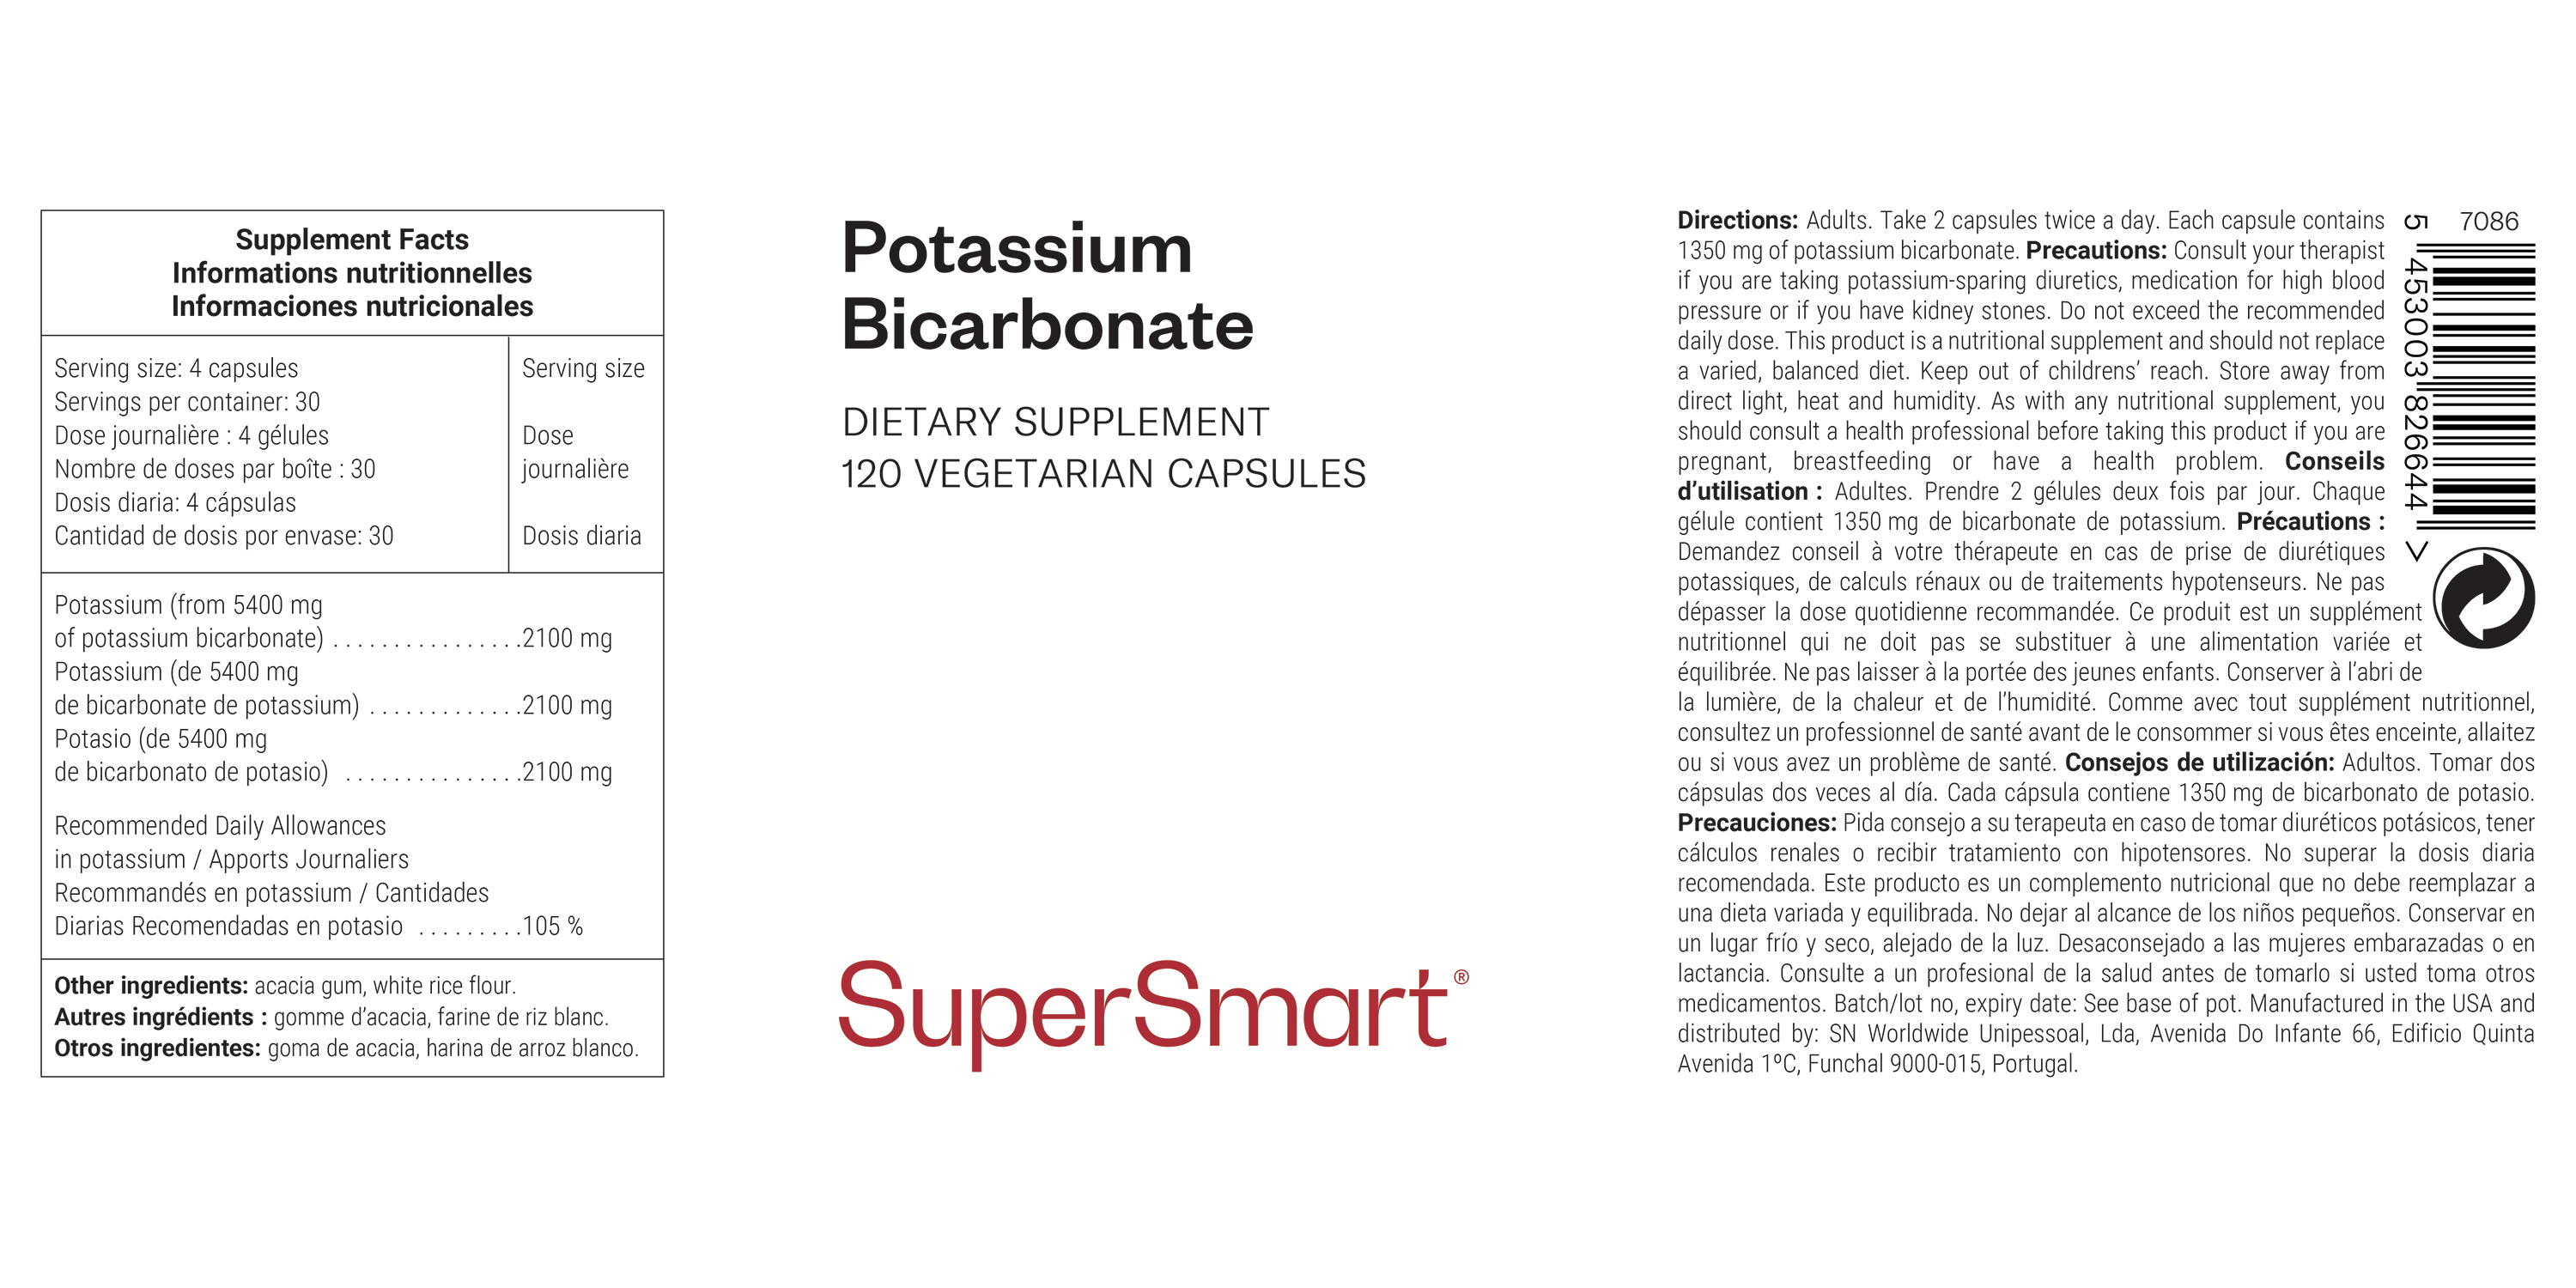 Potassium Bicarbonate Supplement 